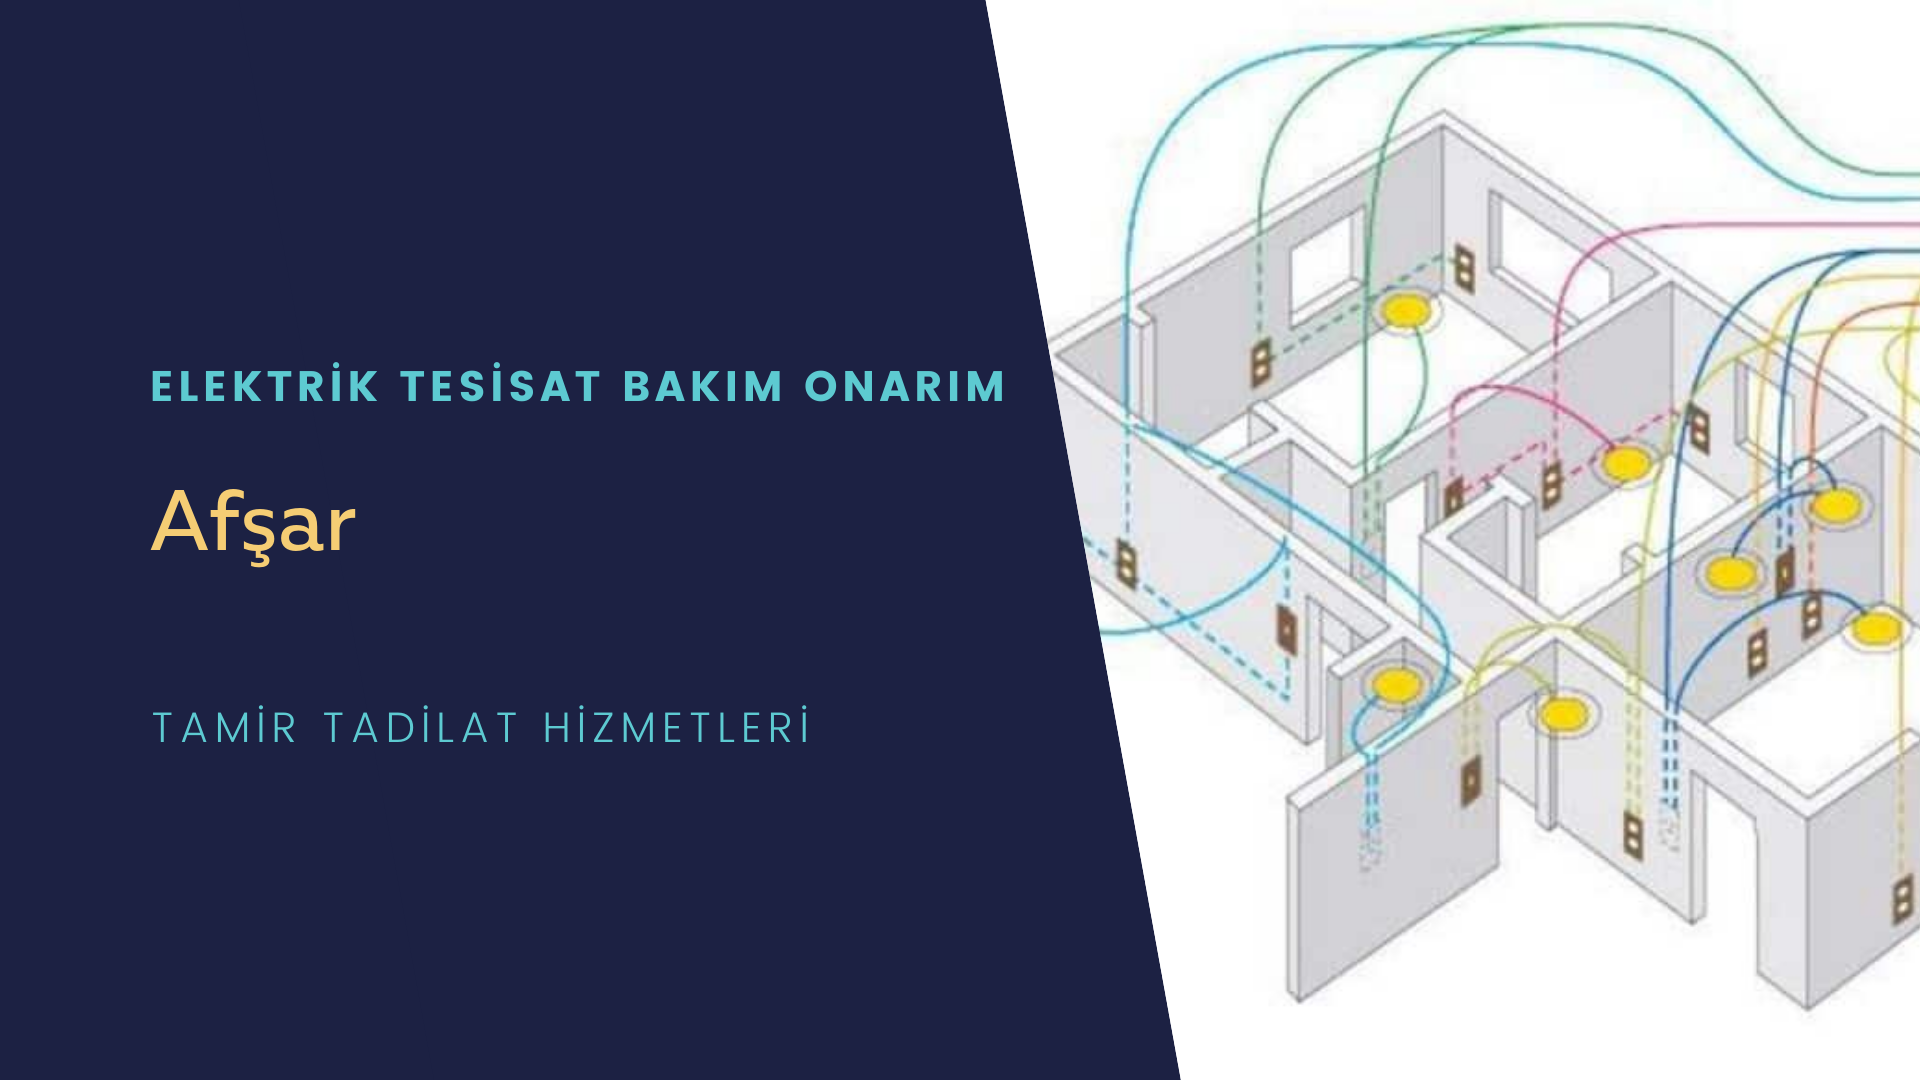 Afşar'da elektrik tesisatı ustalarımı arıyorsunuz doğru adrestenizi Afşar elektrik tesisatı ustalarımız 7/24 sizlere hizmet vermekten mutluluk duyar.